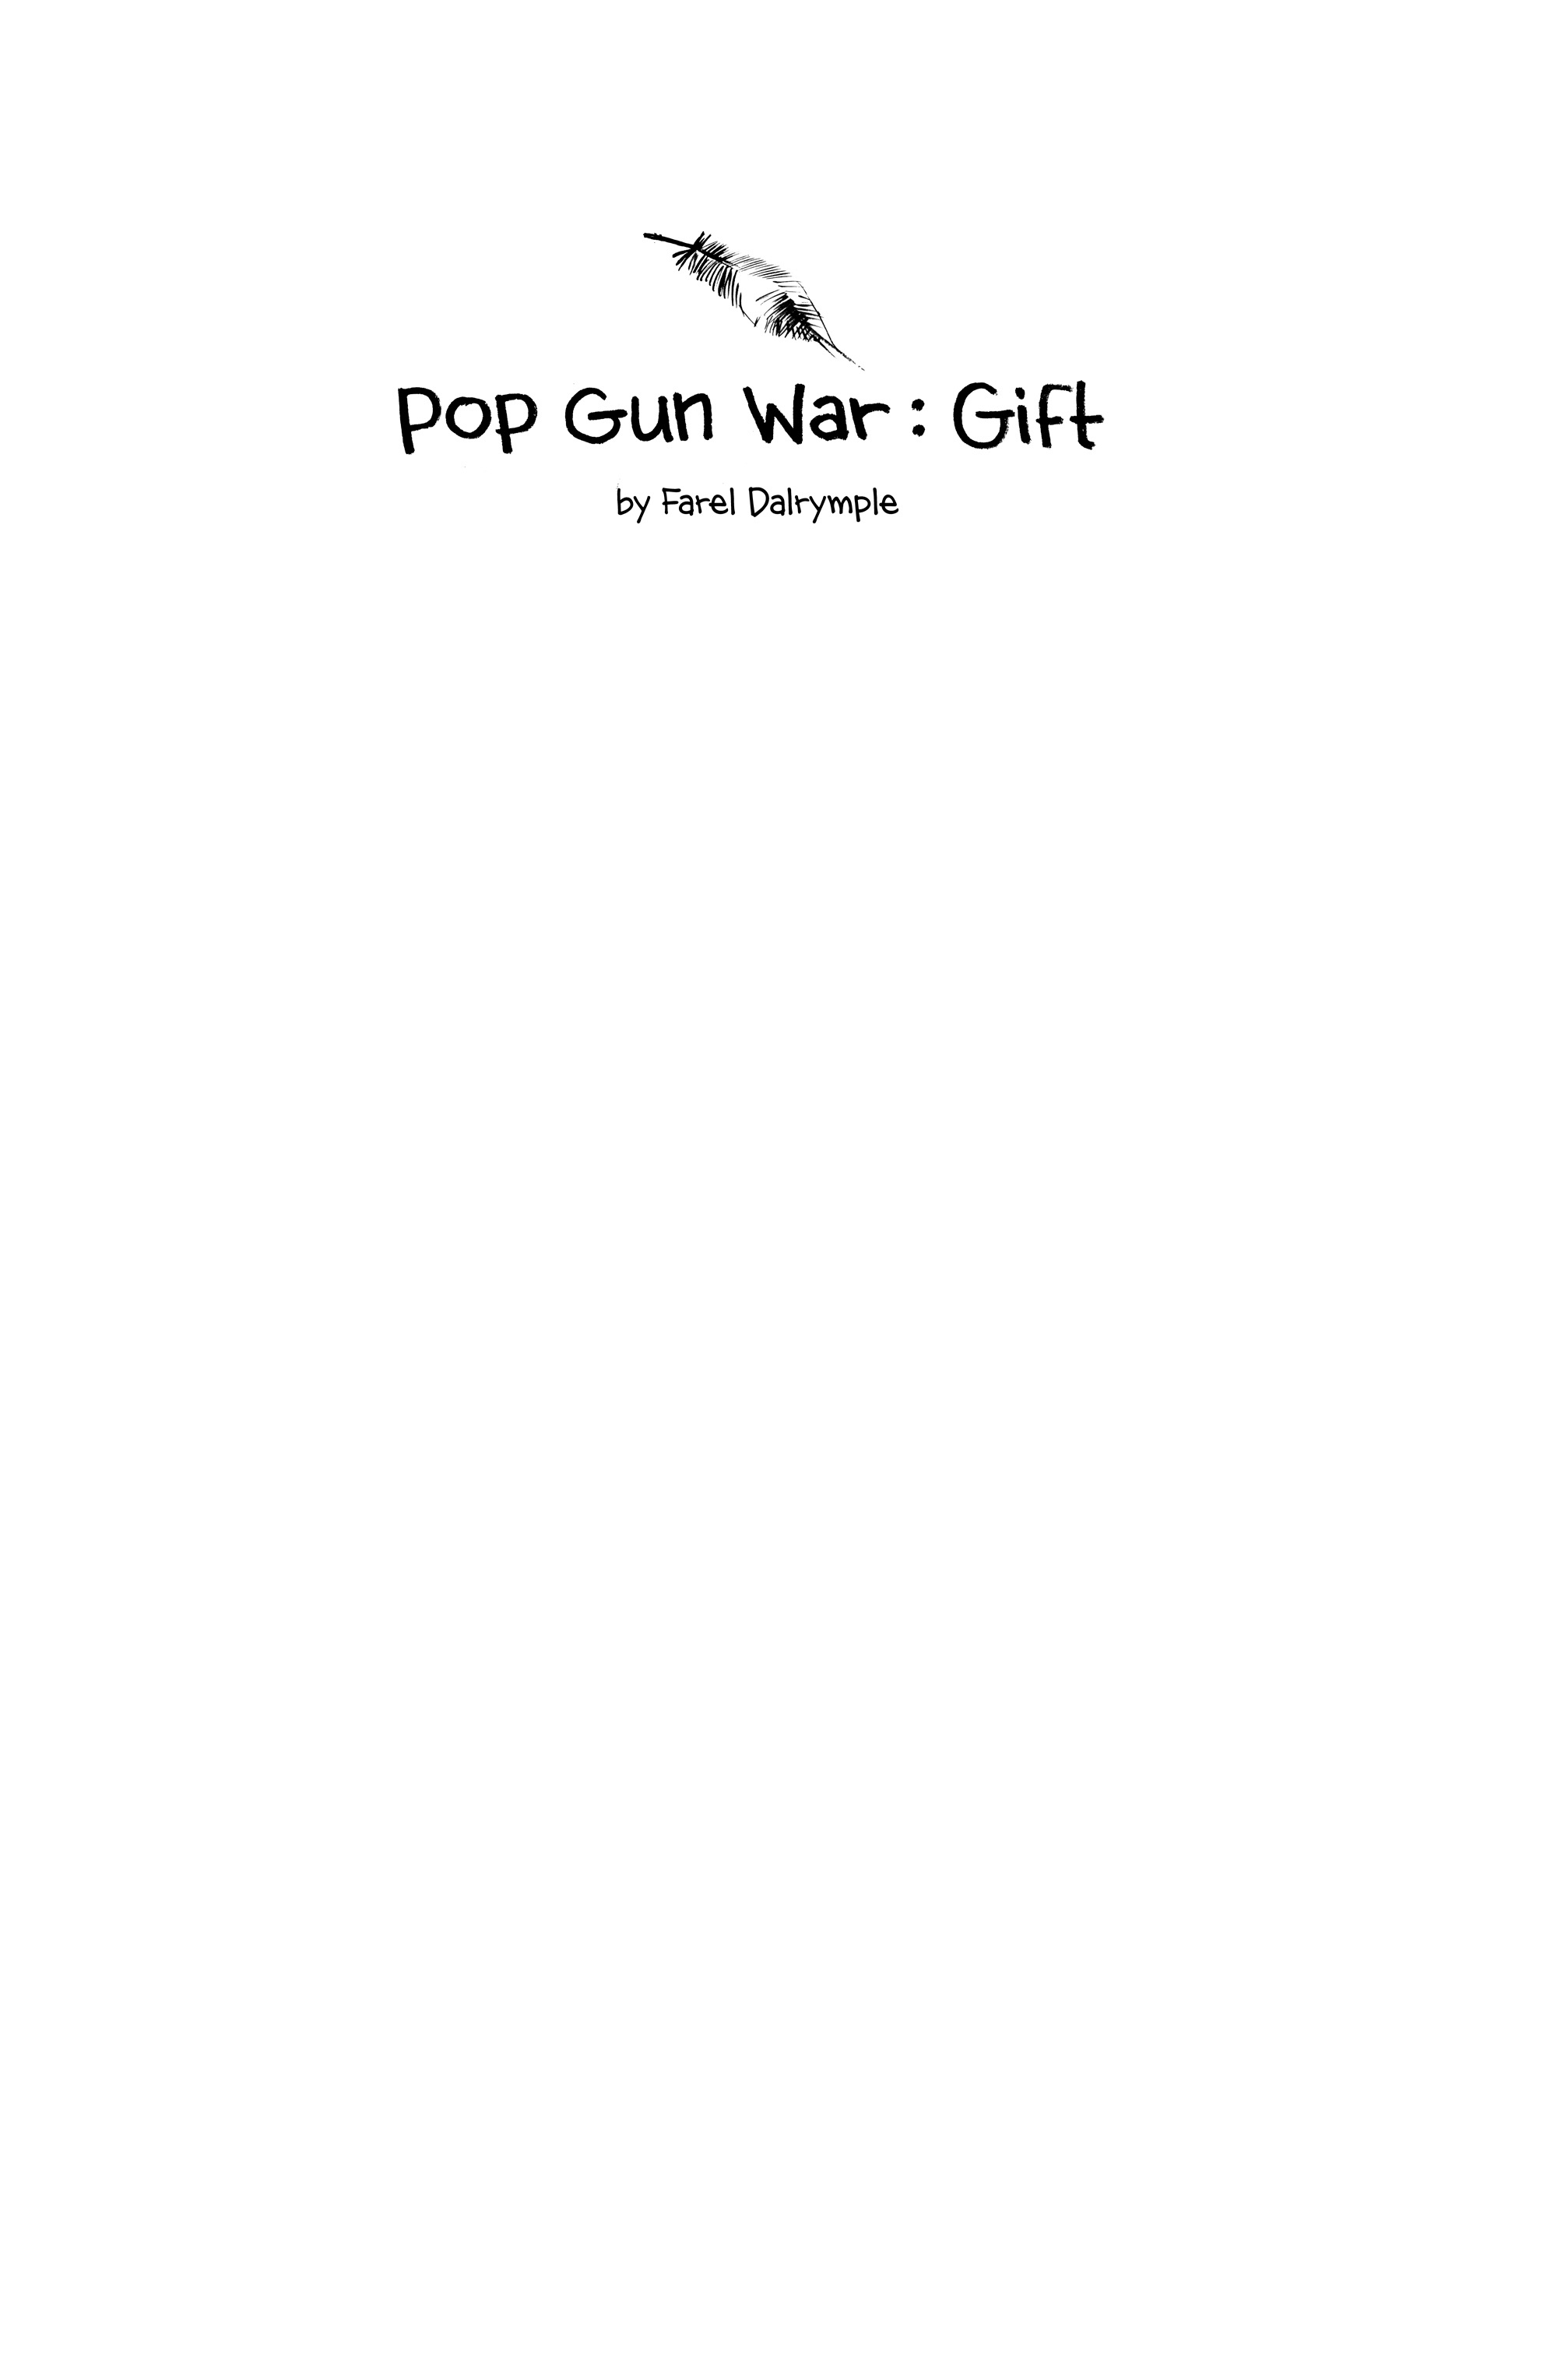 Read online Pop Gun War: Gift comic -  Issue # TPB - 4